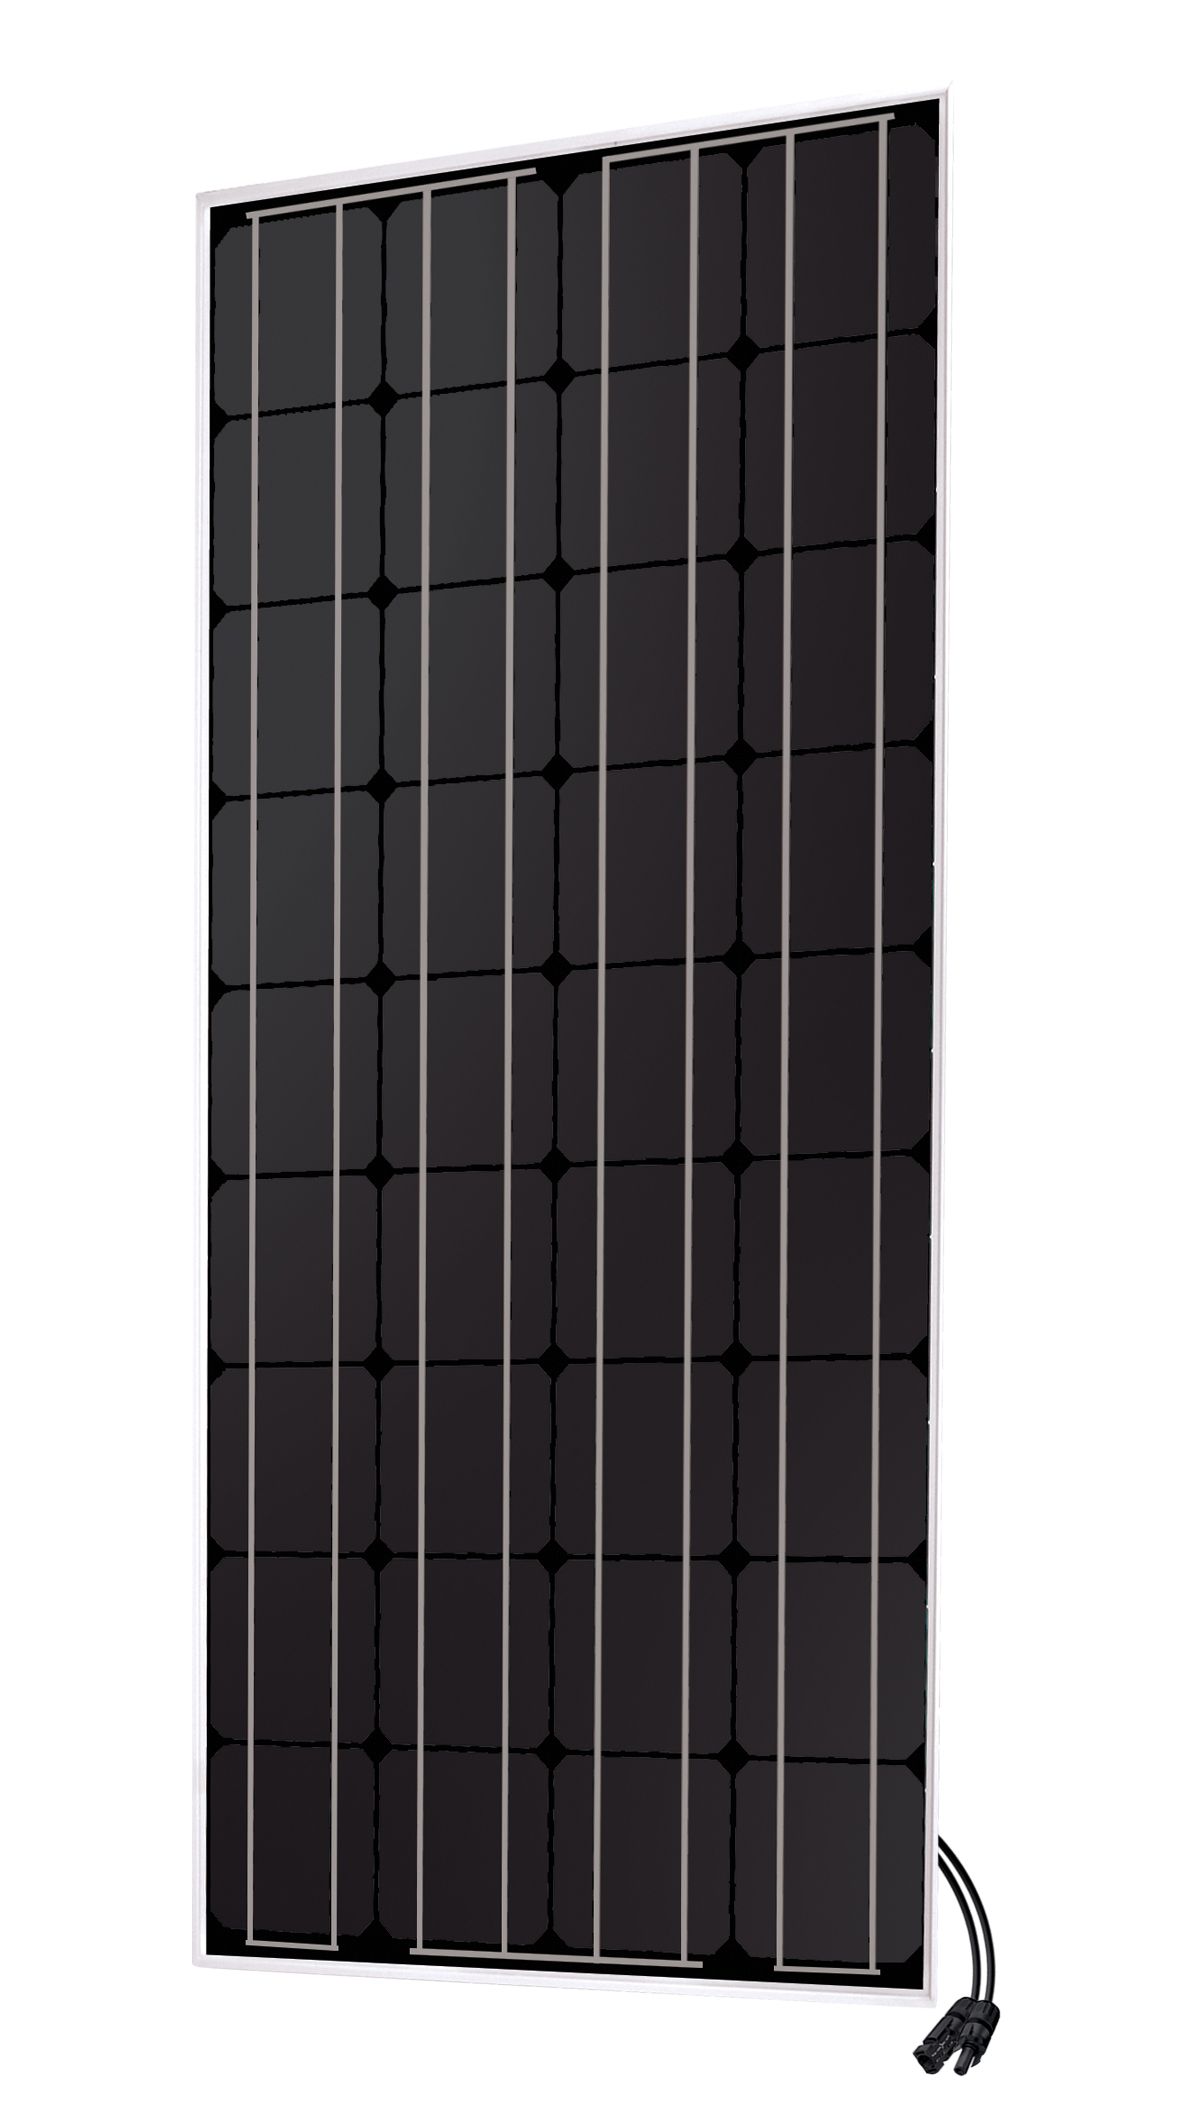 Panneau Solaire 80 W 12V Mono Unisun- panneaux solaires rigides